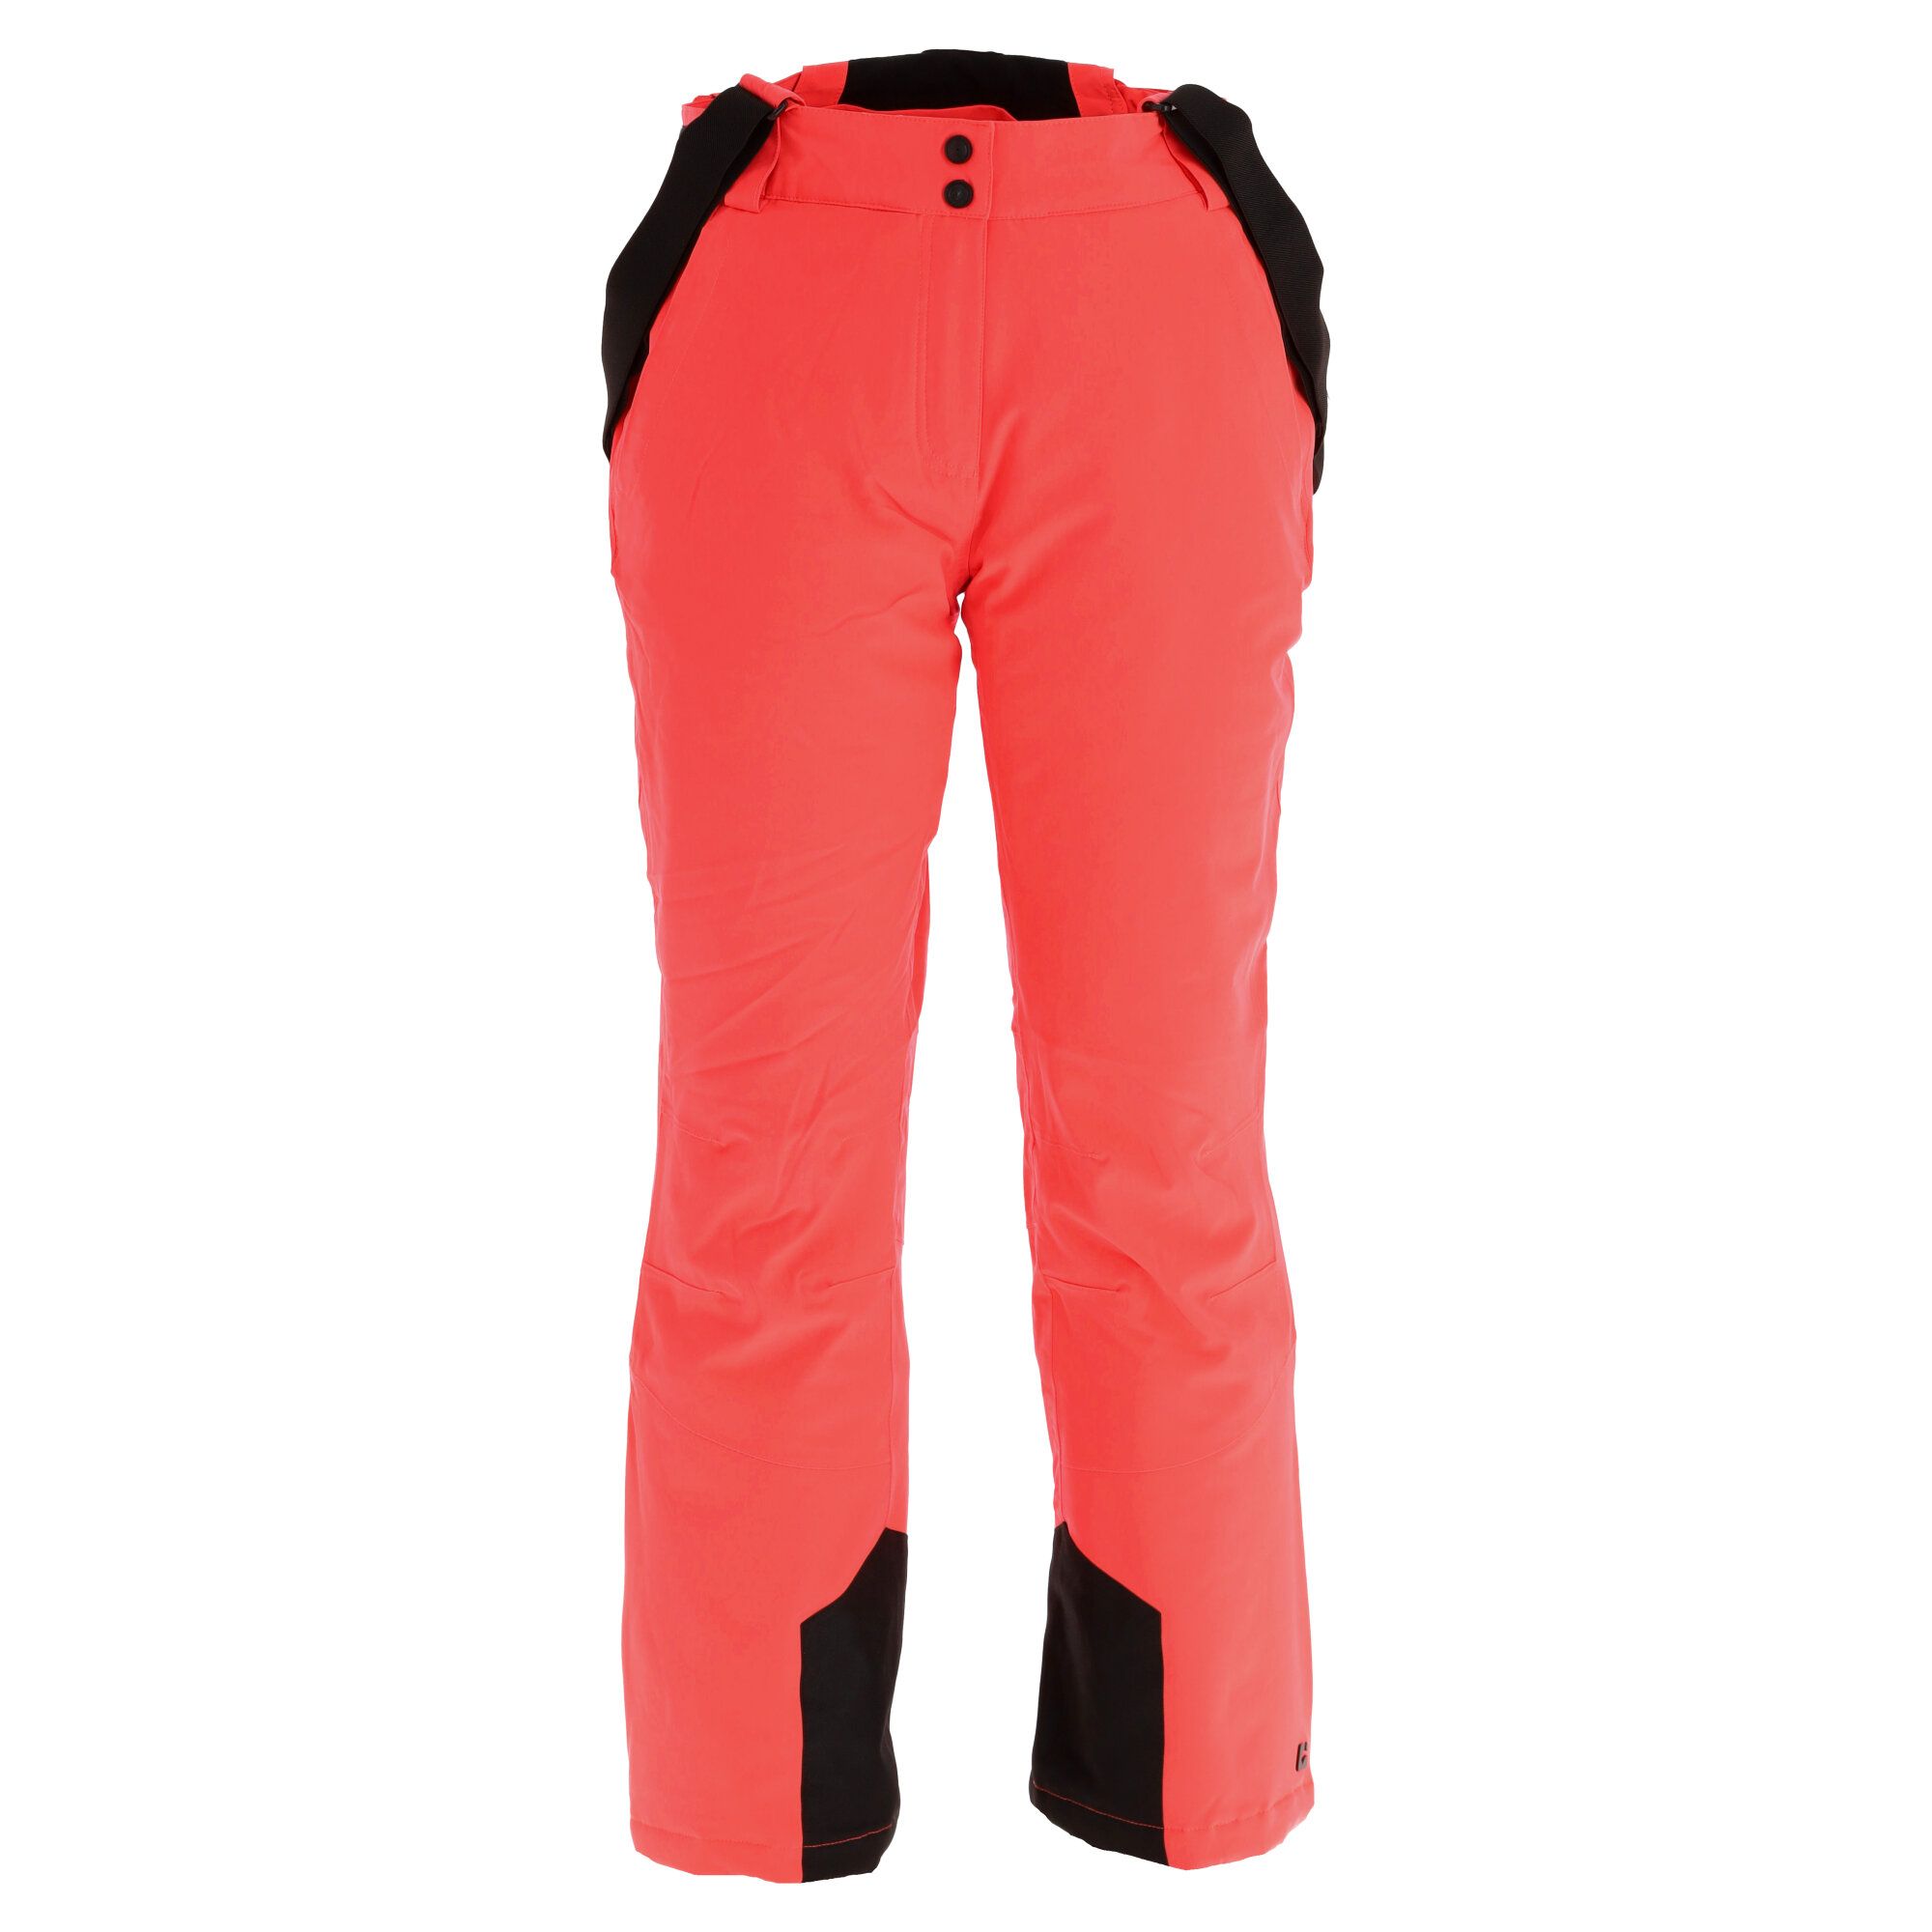 Pantaloni ski barbati Function, Killtec rosu, XL marimea